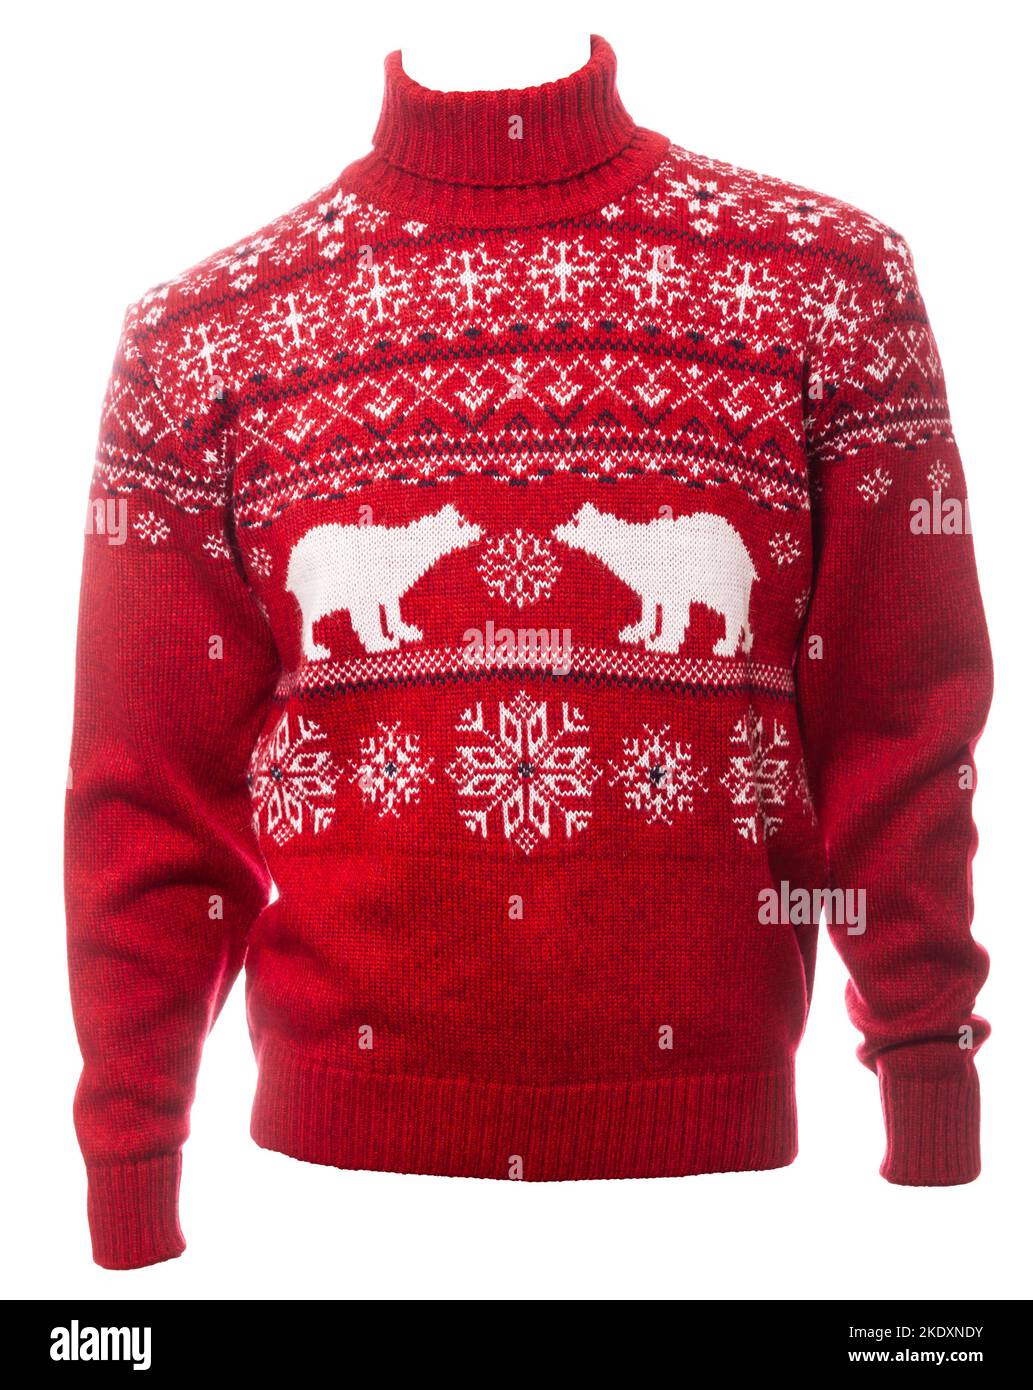 Pullover rosso a maglia natalizio dal design tradizionale con ornamento in orso (noto anche come Ugly Sweater), modello isolato su sfondo bianco Foto Stock